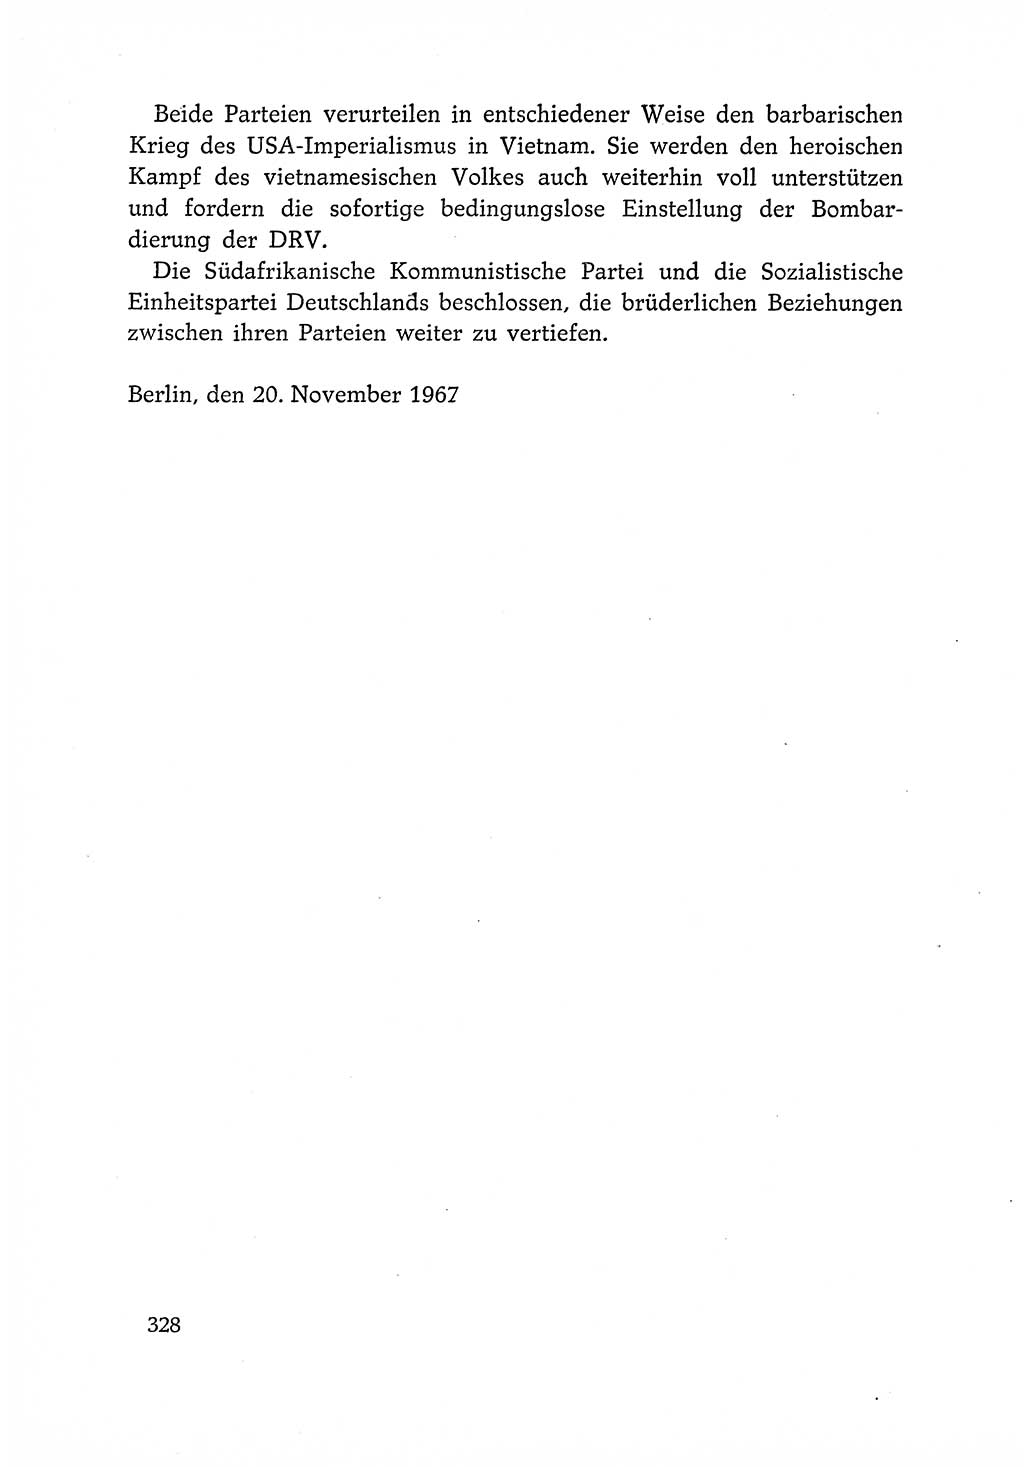 Dokumente der Sozialistischen Einheitspartei Deutschlands (SED) [Deutsche Demokratische Republik (DDR)] 1966-1967, Seite 328 (Dok. SED DDR 1966-1967, S. 328)